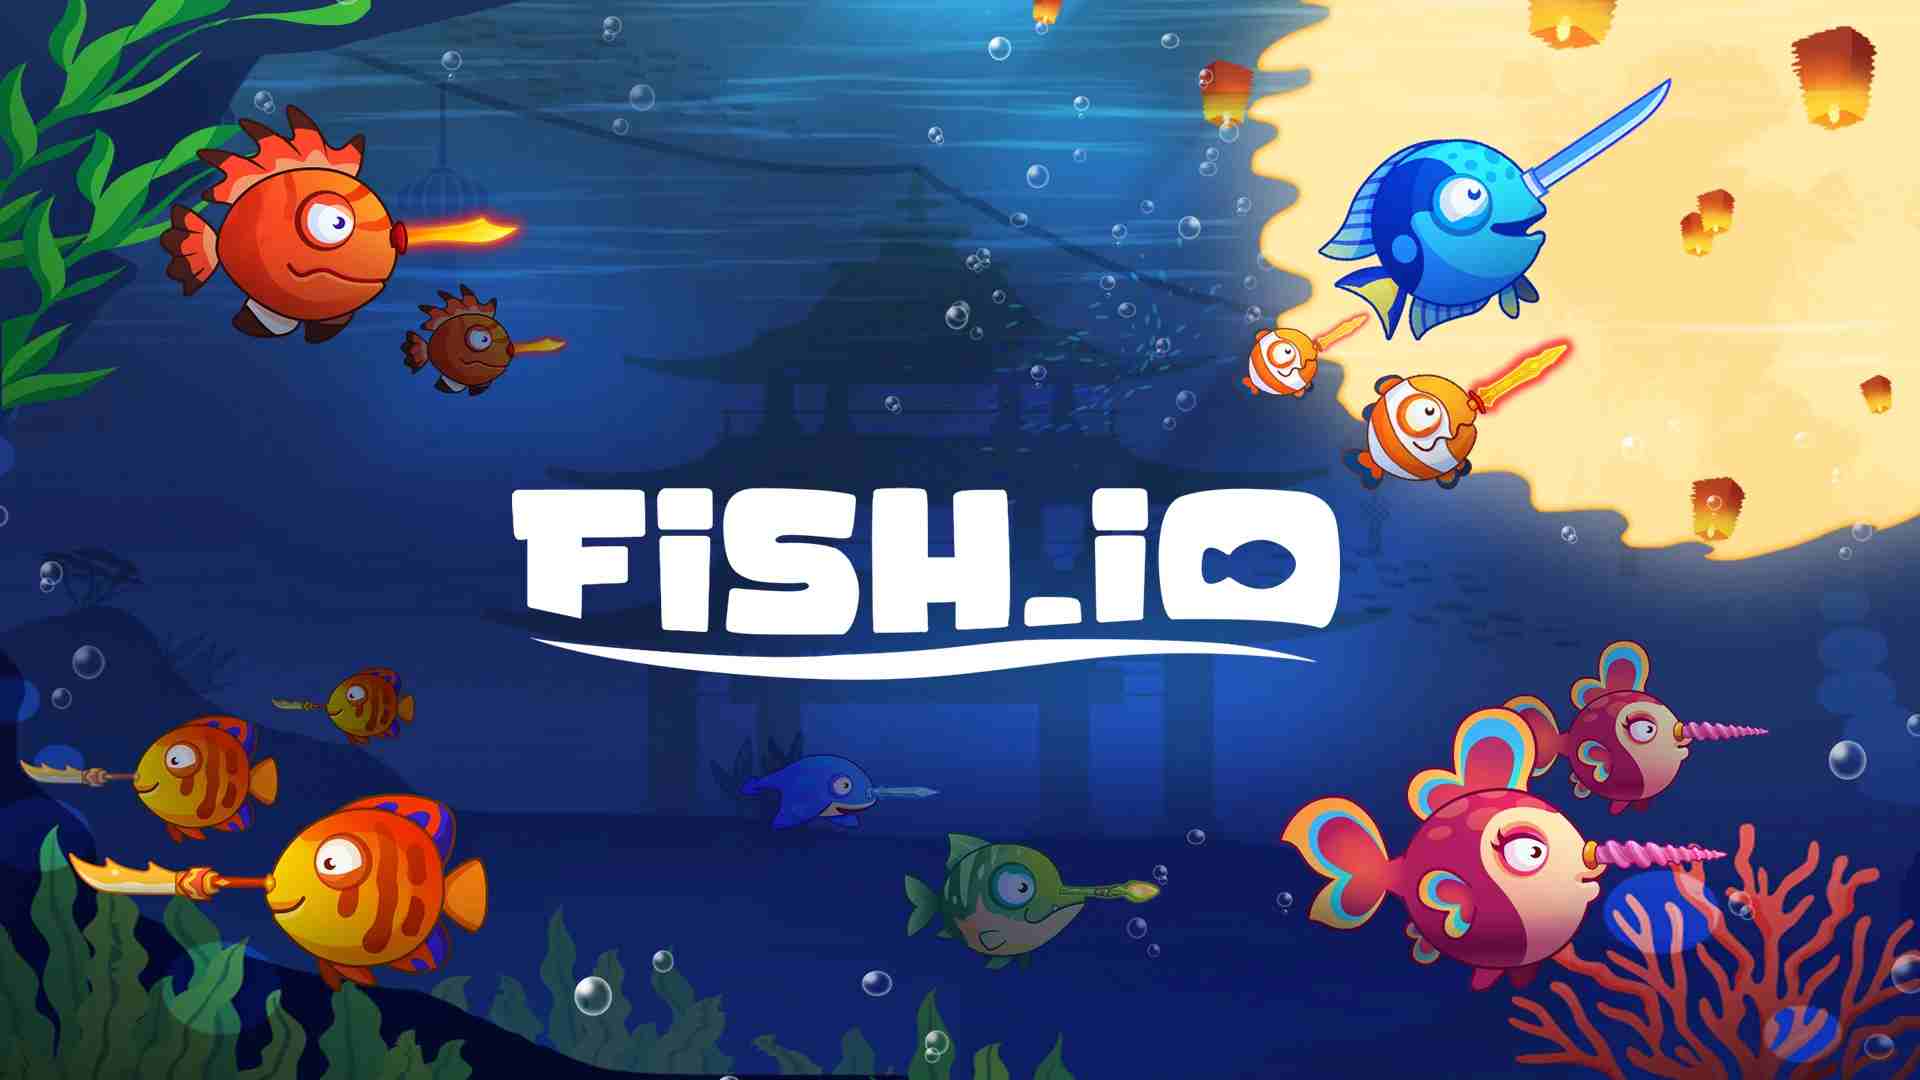 Fish.io 1.9.4 APK MOD [Huge Amount Of Energy]